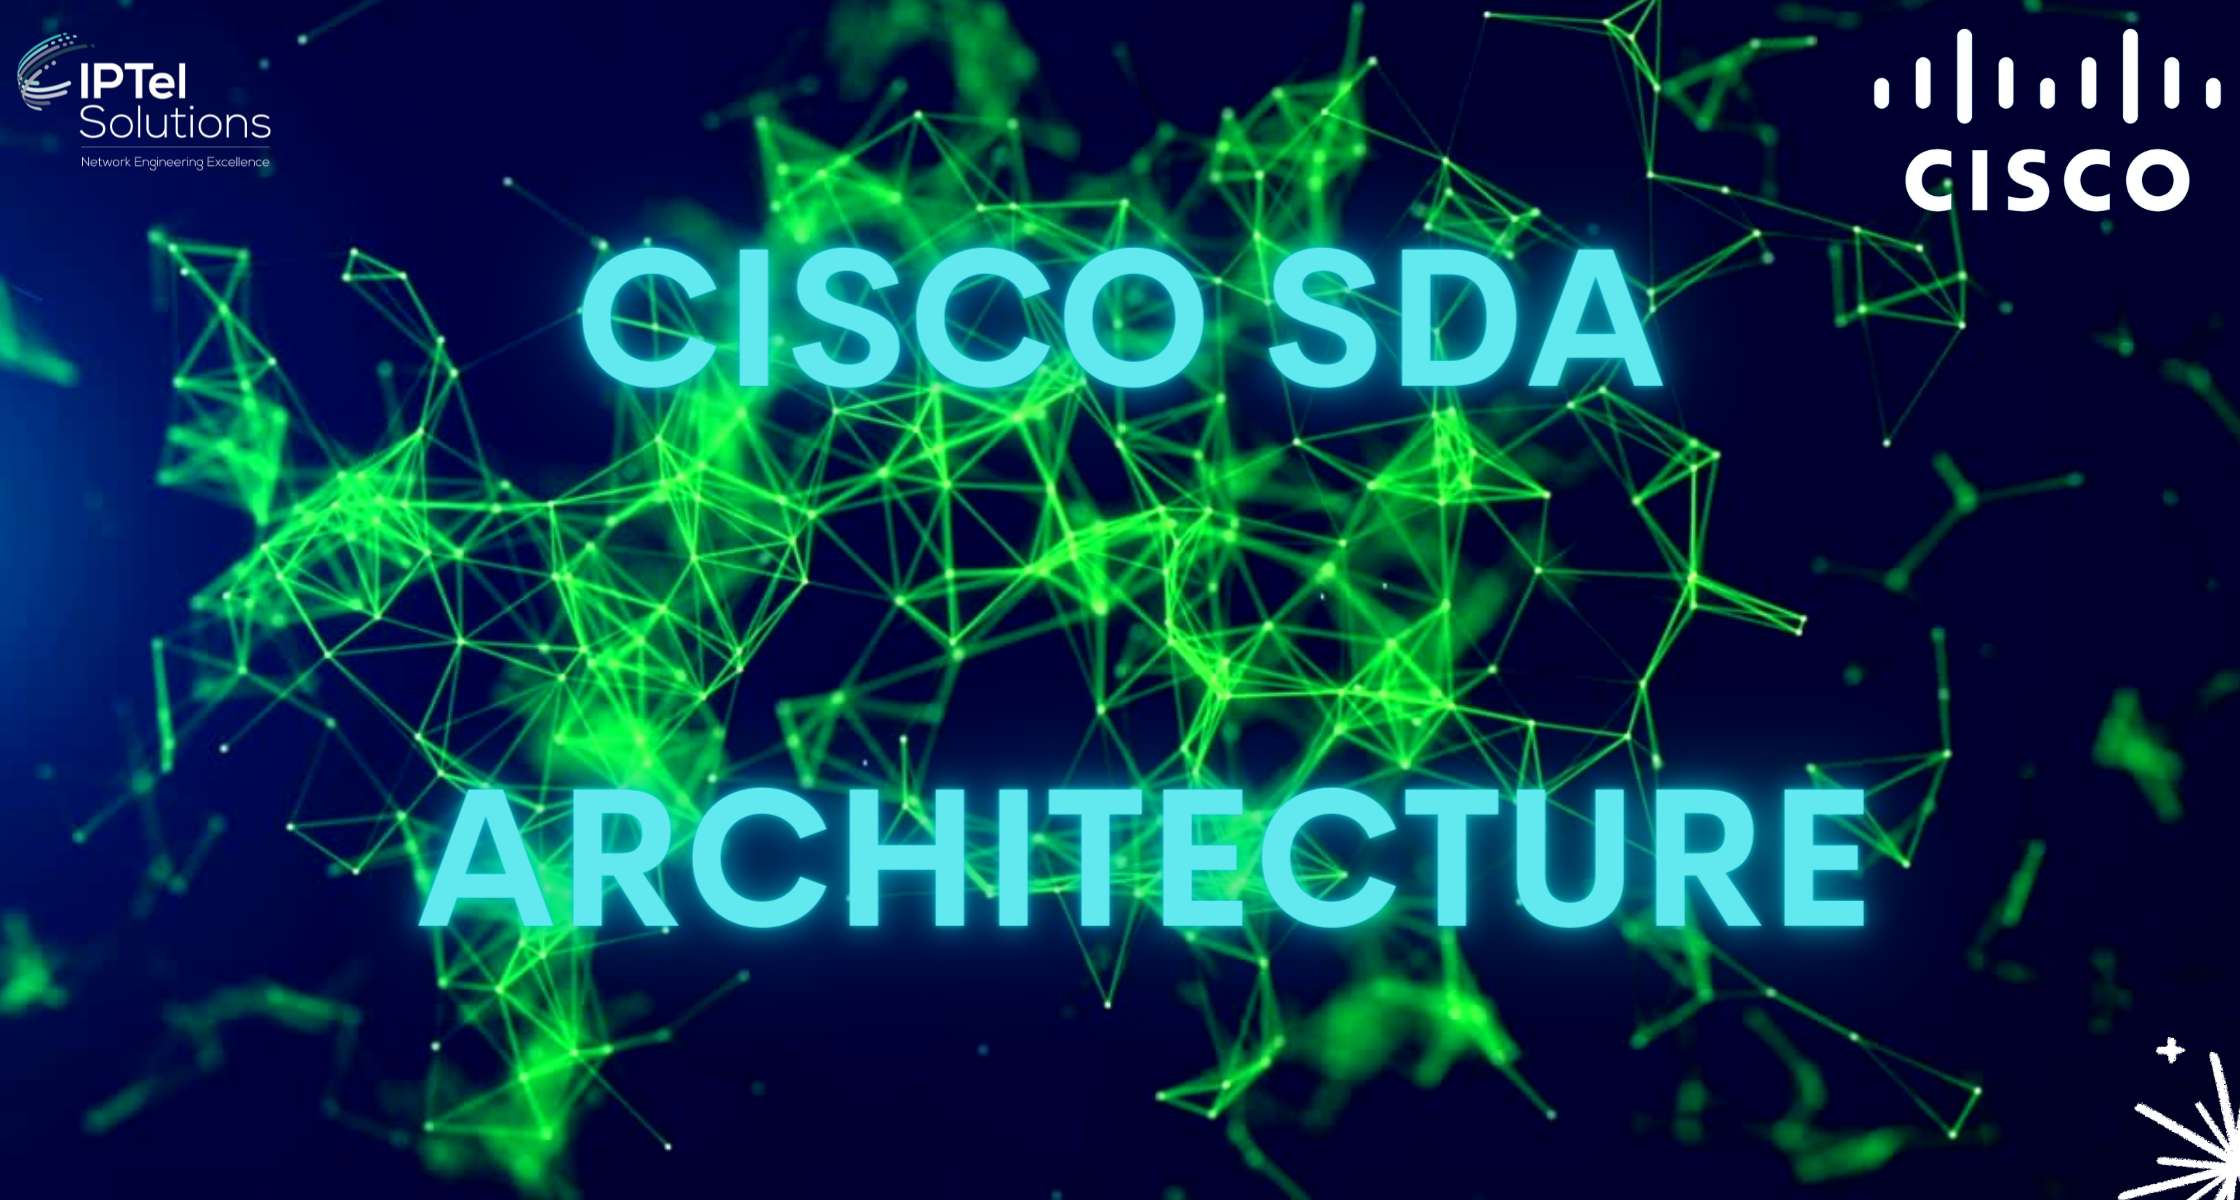 Cisco SDA Architecture